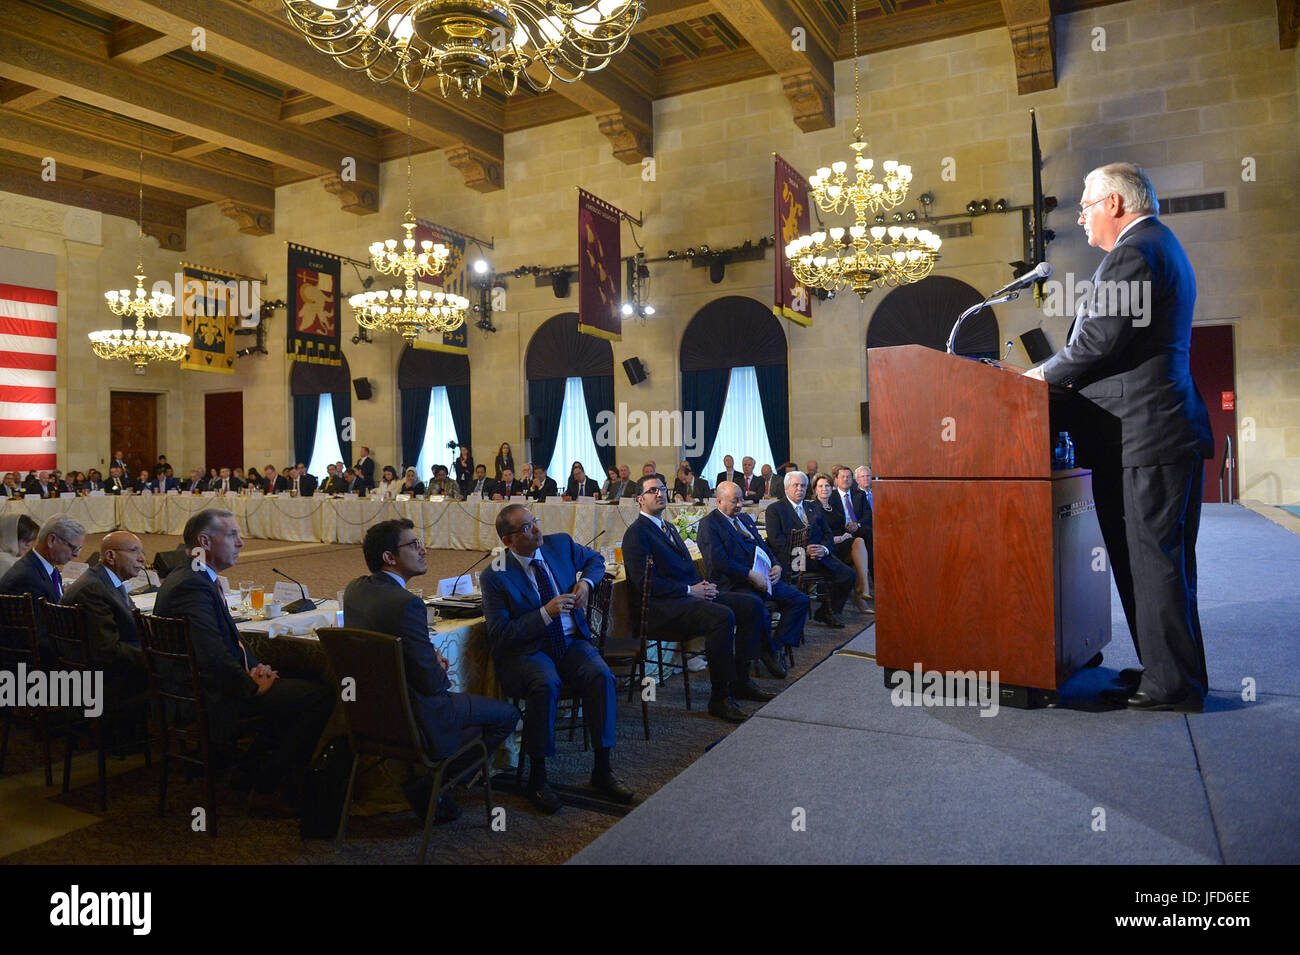 La secrétaire d'État des États-Unis, Rex Tillerson prononce une allocution à la Chambre de Commerce des États-Unis aux États-Unis Arabie-CEO Summit, du Département du Commerce à Washington, D.C. le 19 avril 2017. Banque D'Images